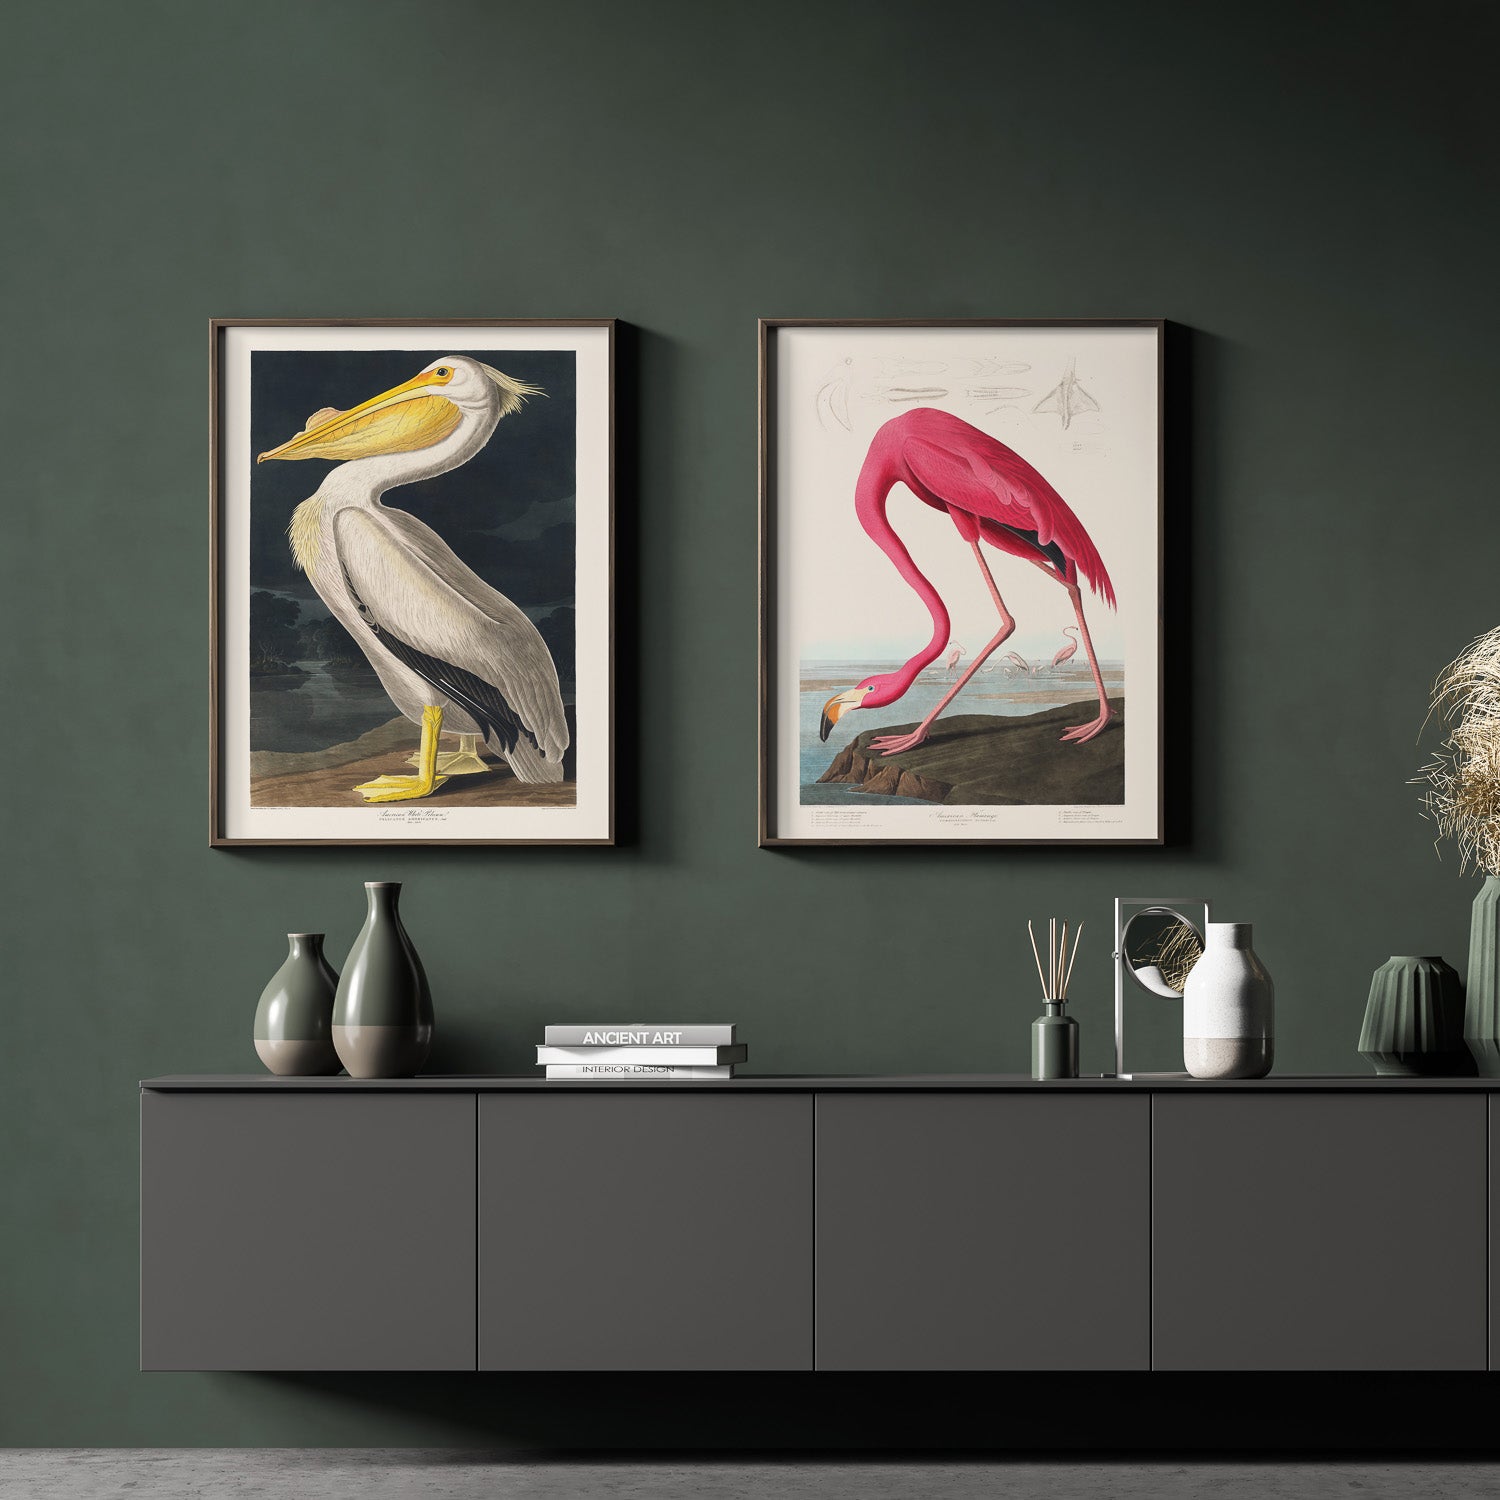 Tavla med vintagekonst föreställande en vit pelikan och en rosa flamingo